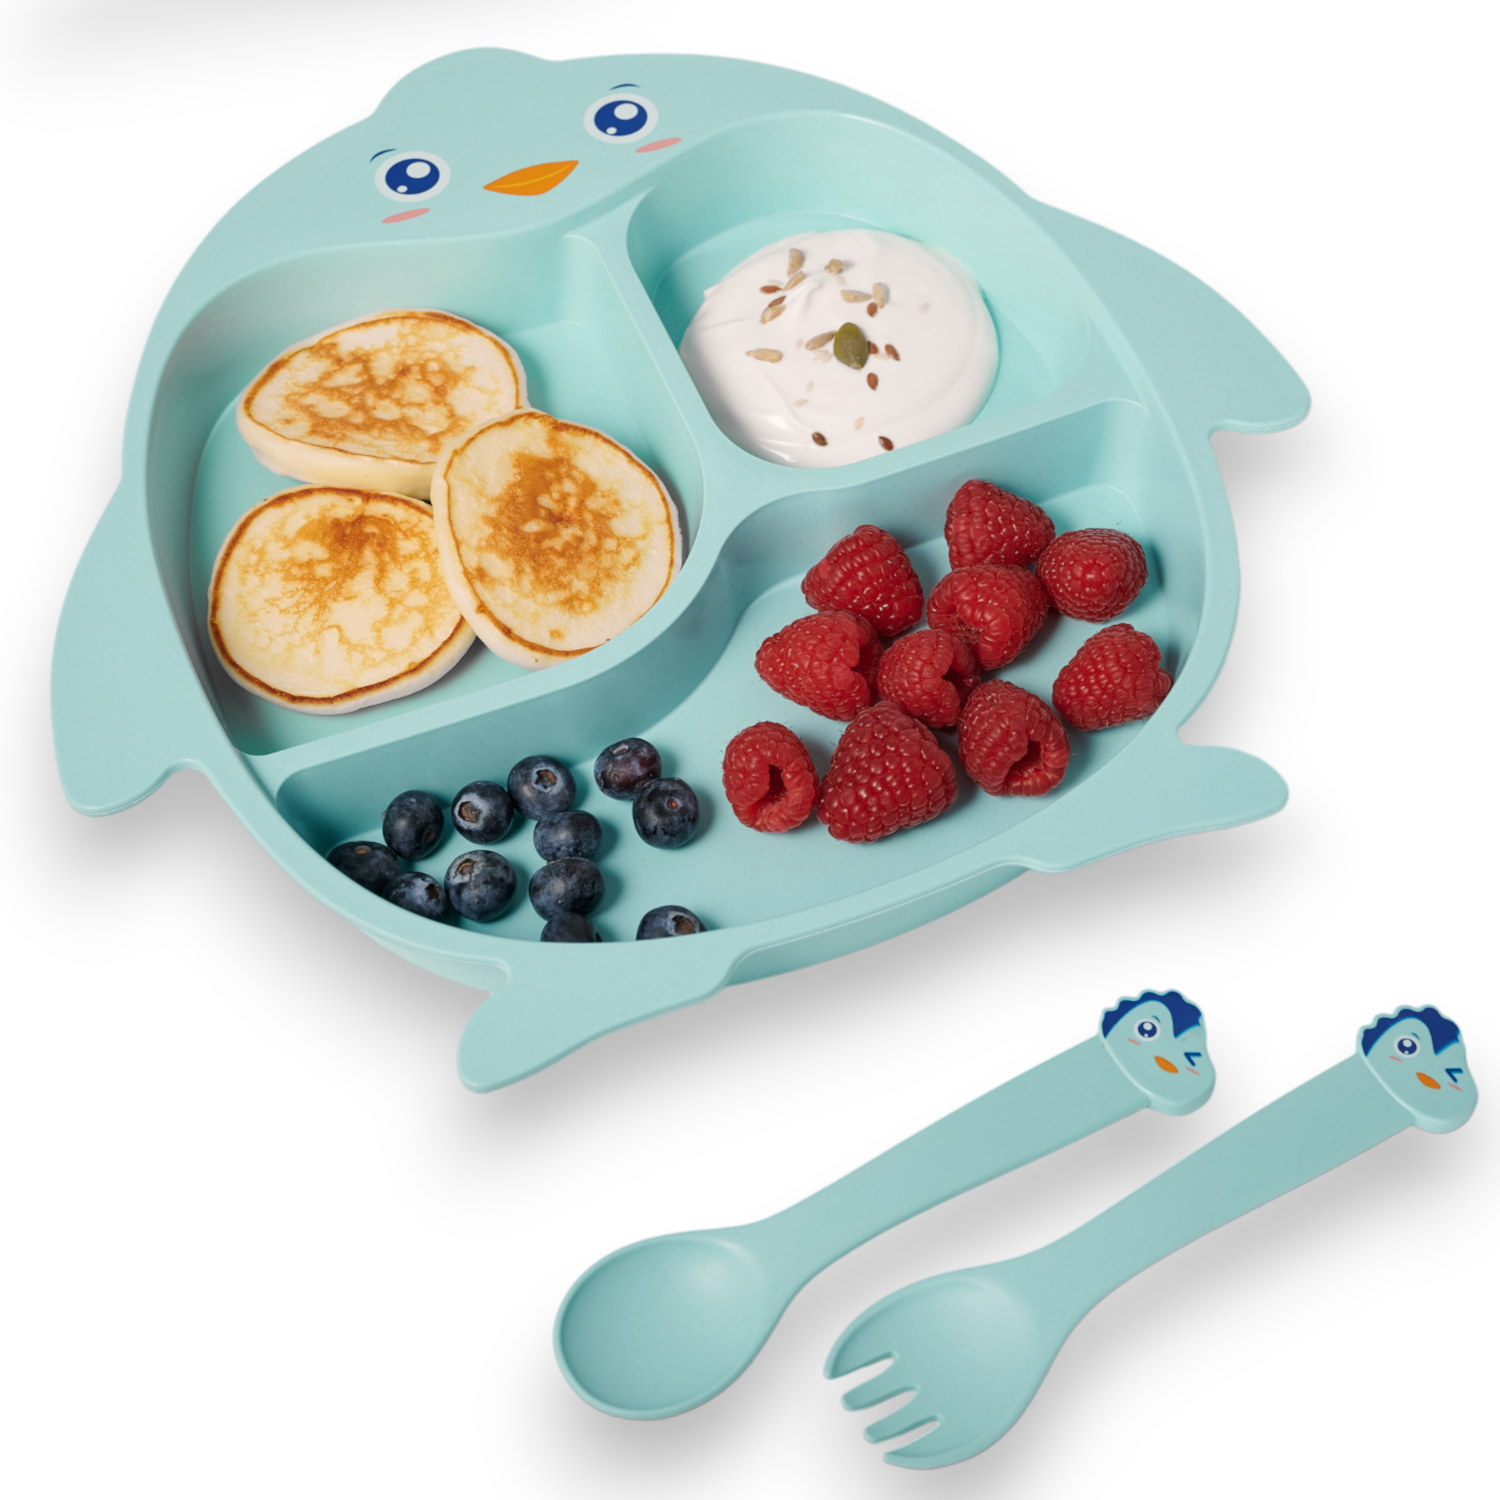 Детская посуда для кормления Добрый Филин Пингвинёнок тарелка, ложка, вилка, палочки кухня детская игровая amore bello jb0208736 с настоящей водой посуда еда зеленый